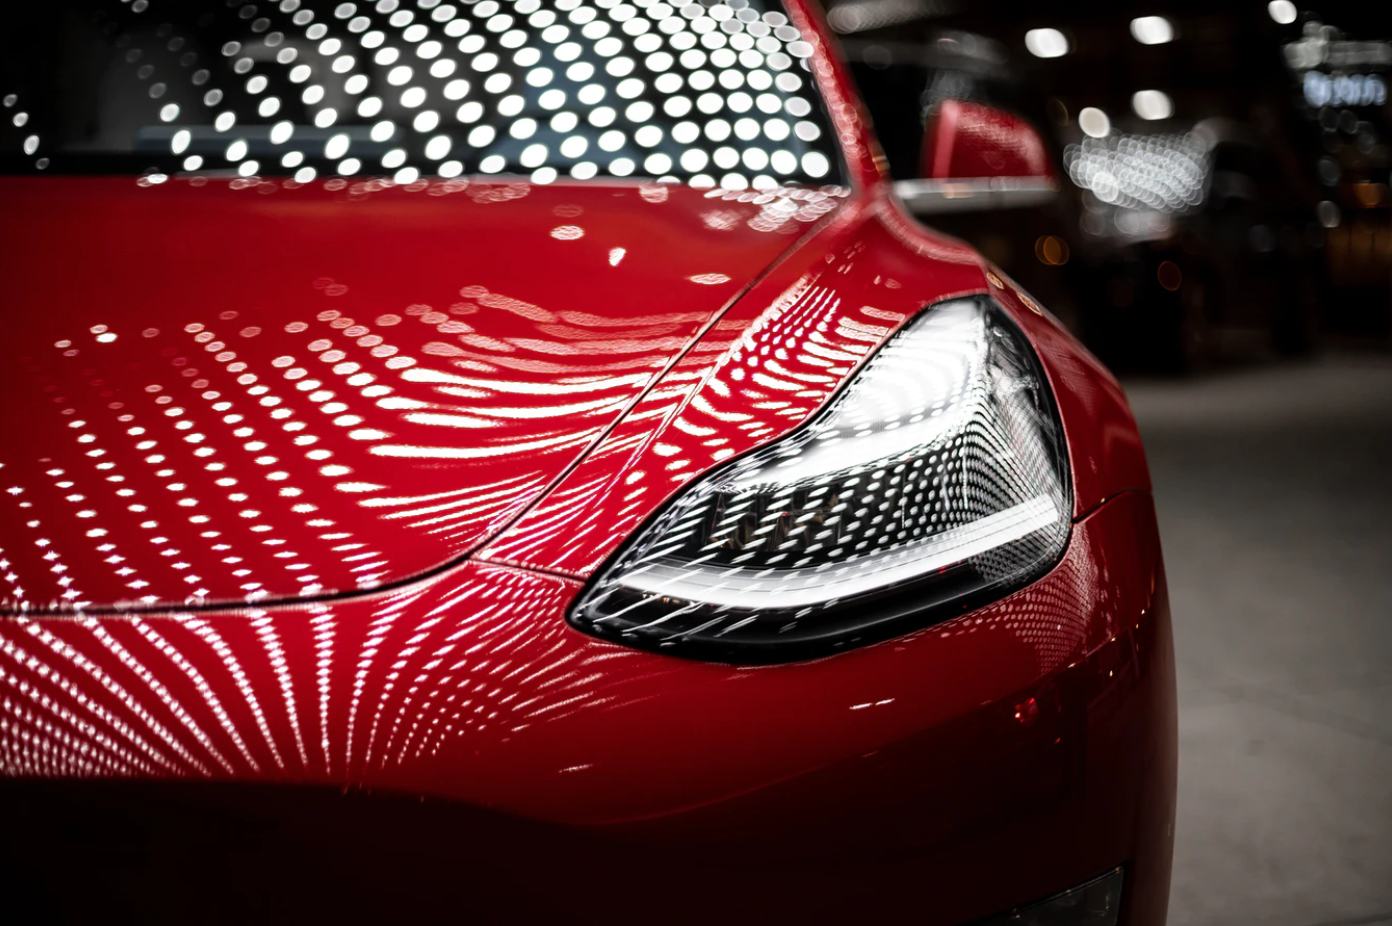 Tesla Model 3 Headlights in Dever; image by Vlad Tchompalov, via Unsplash.com.